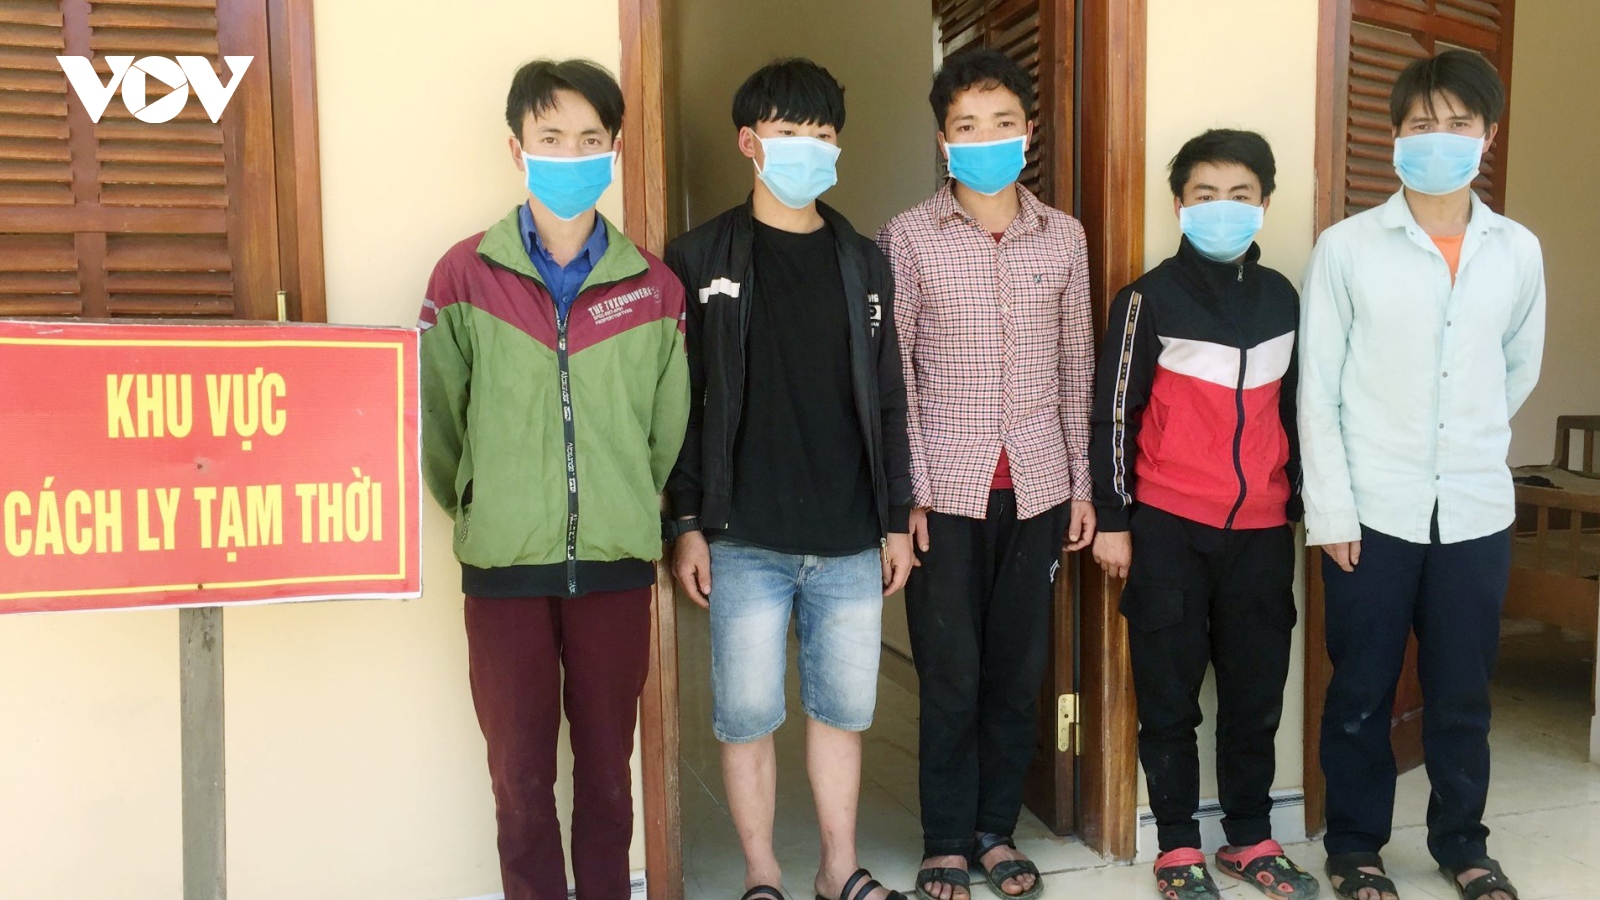 Phát hiện, bắt giữ 5 người nhập cảnh trái phép vào huyện Nam Giang, tỉnh Quảng Nam